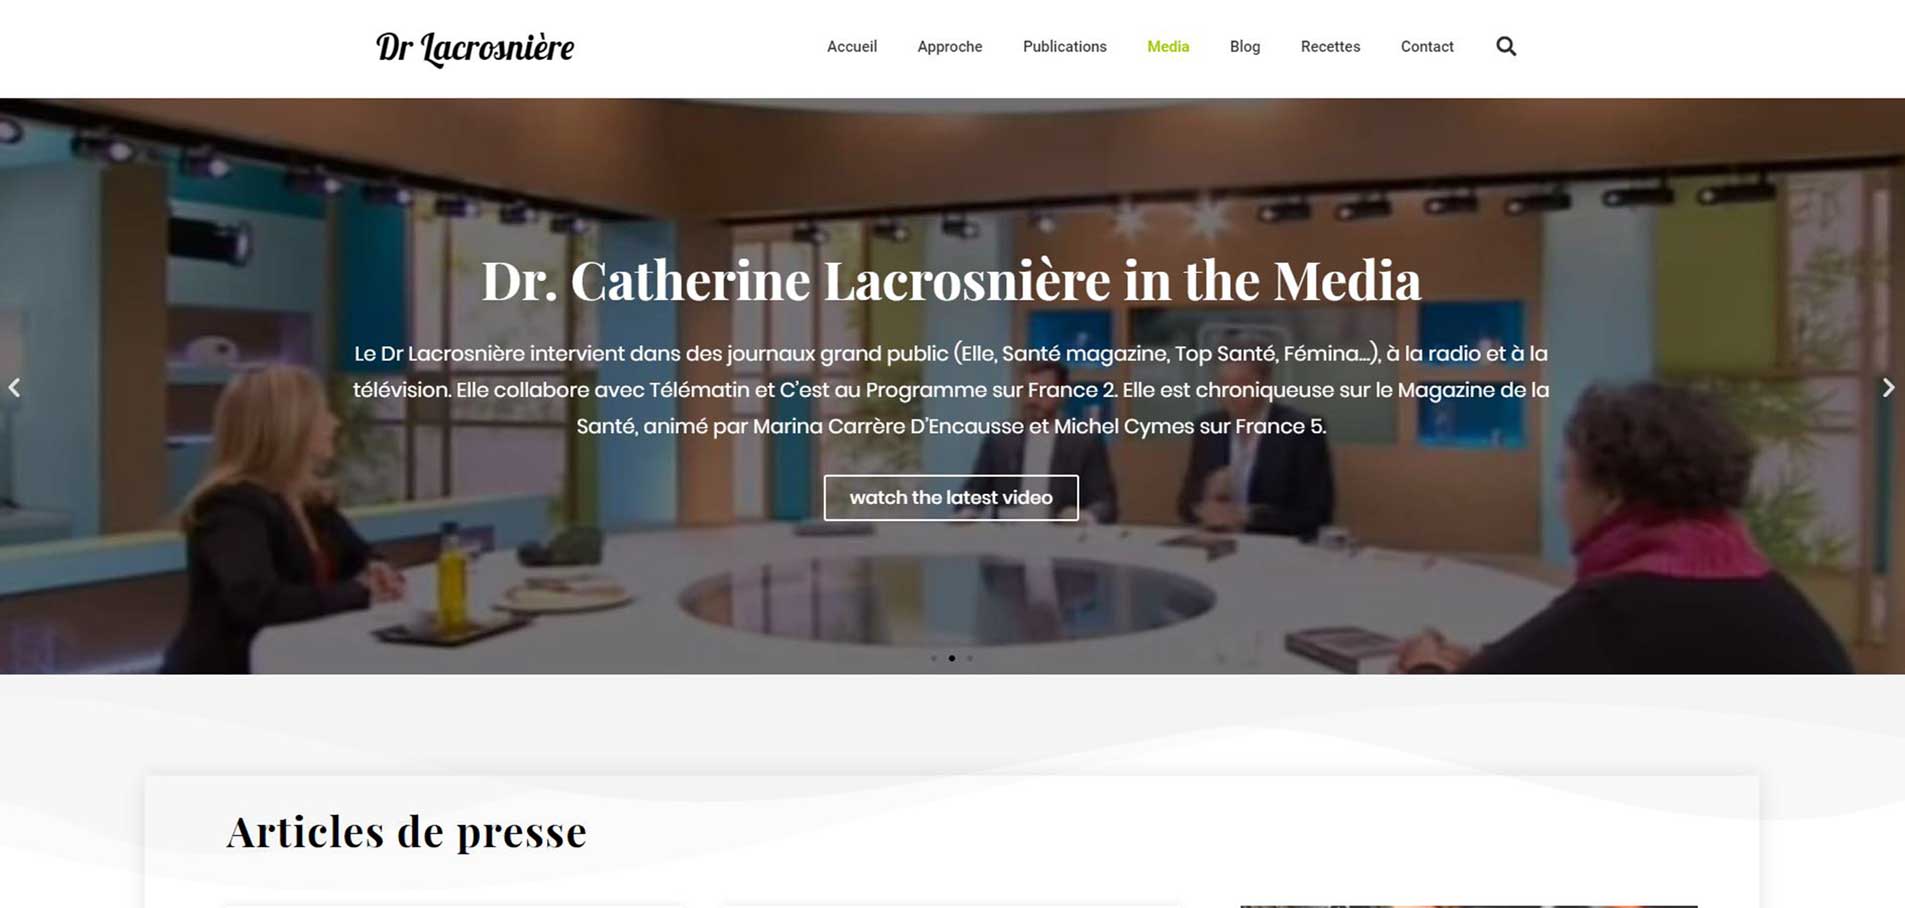 Dr. Lacrosniere-website F